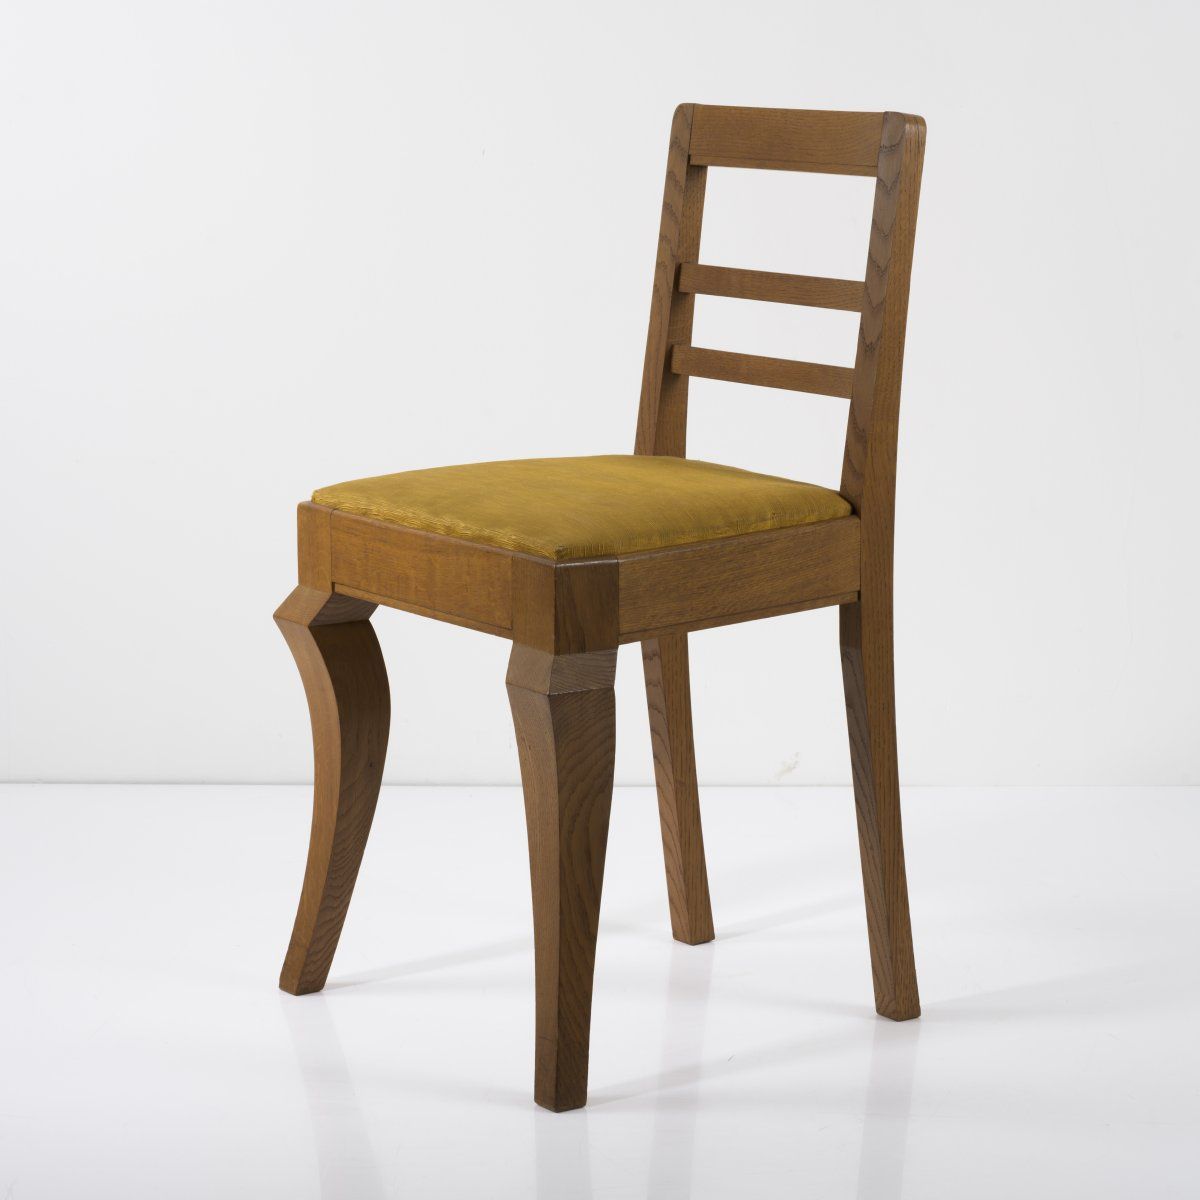 Null 德国，椅子，1920年代，高84 x 49 x 45.5厘米。橡木，纺织覆盖，金黄色。